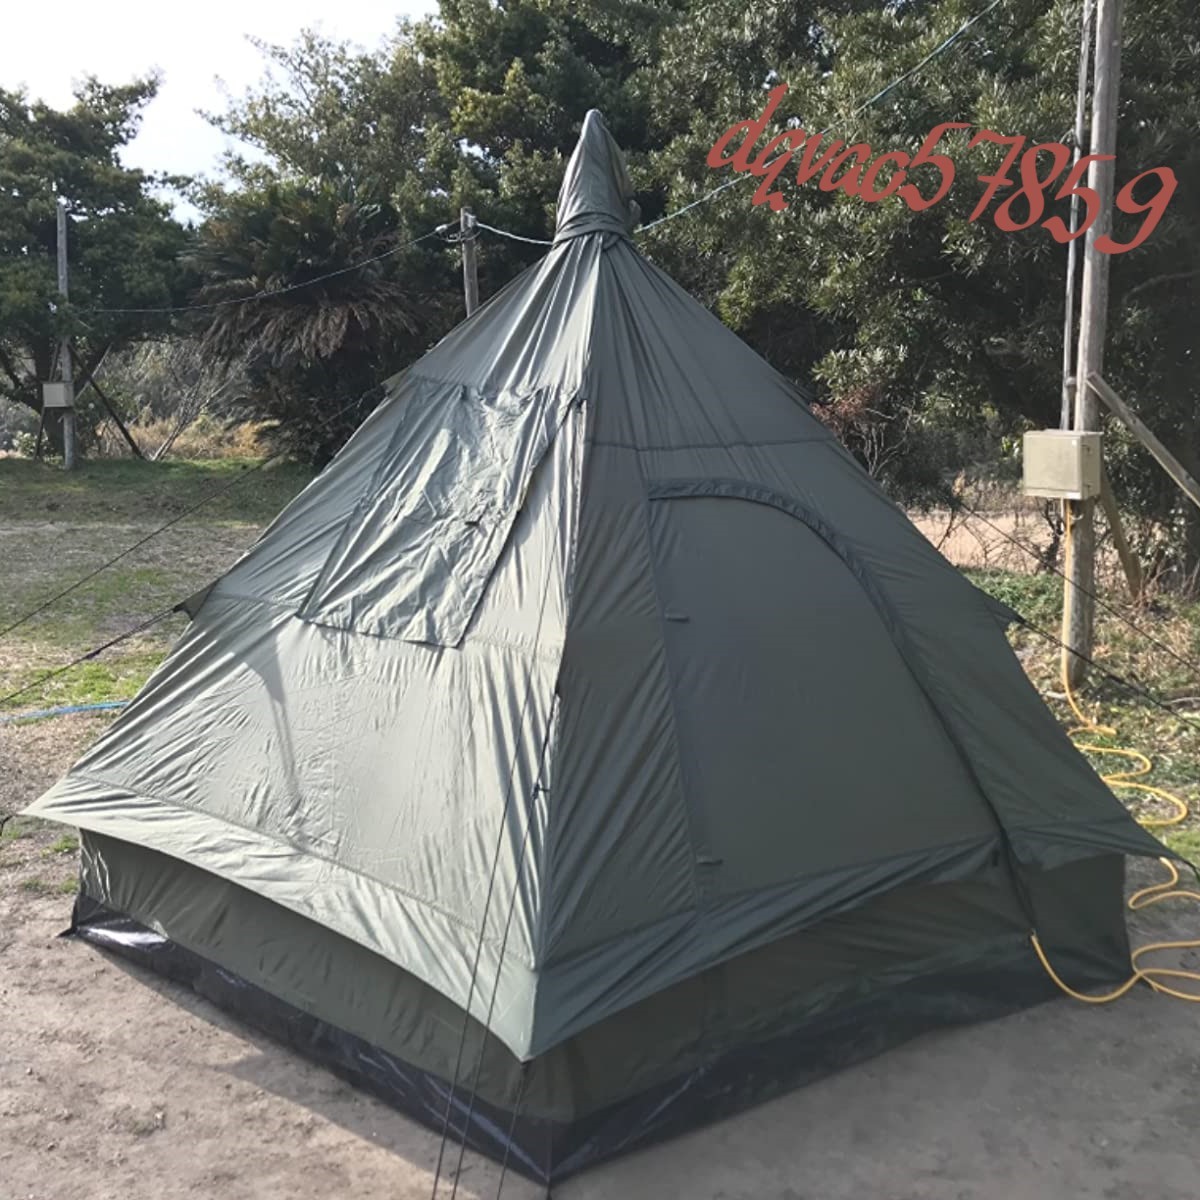 適当な価格 テント ミリタリー ティピーテント 4人用 軍風 テント 3人用 2人用 1人用 ソロ キャンプ ツーリング